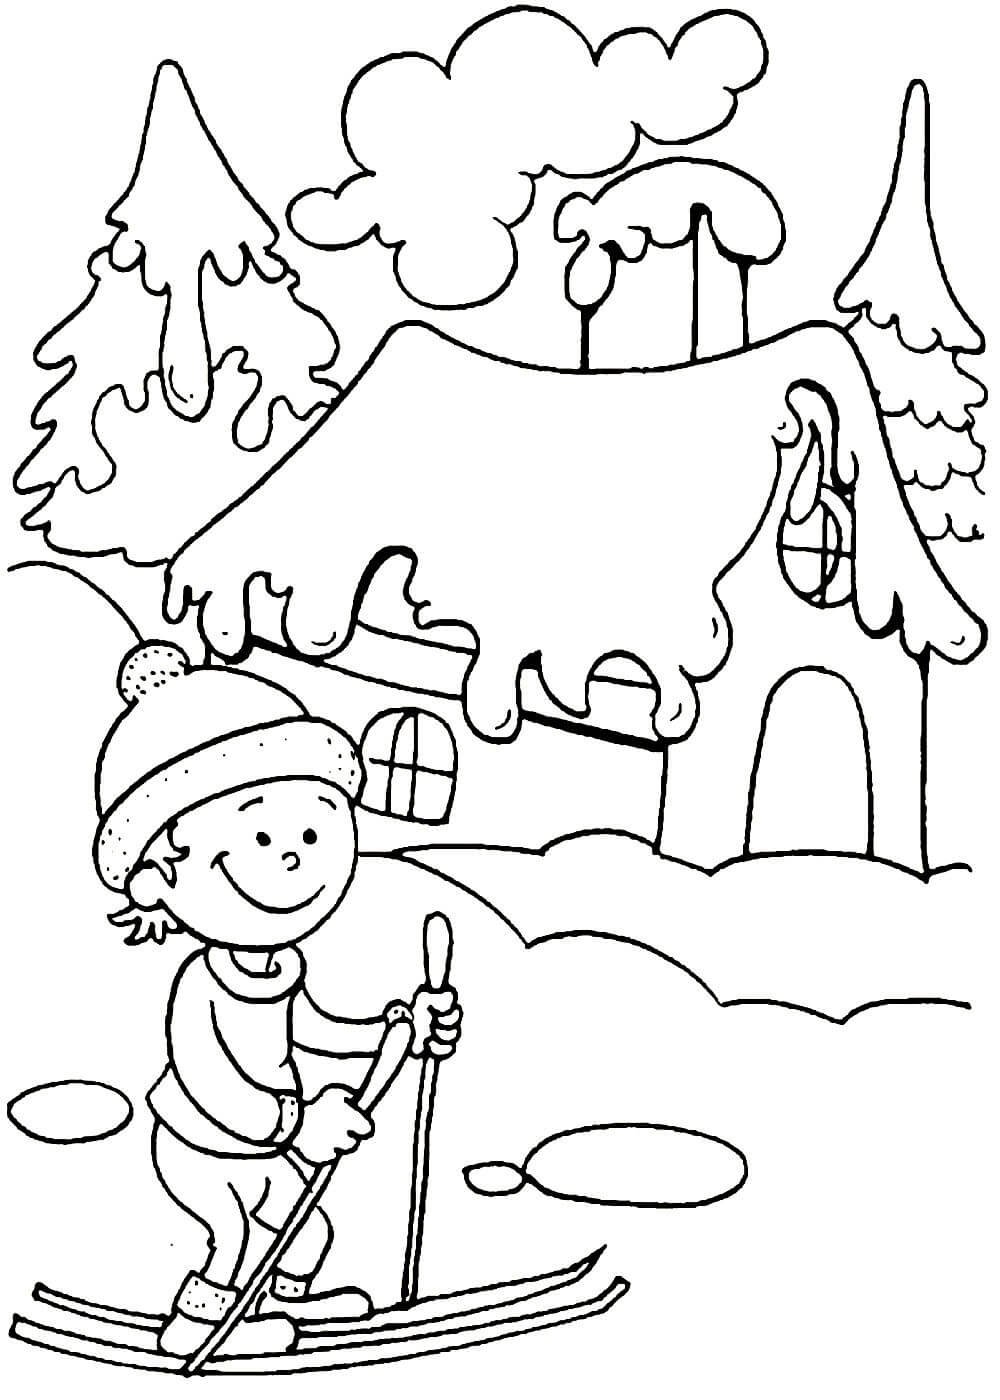 Зимний пейзаж раскраска для детей